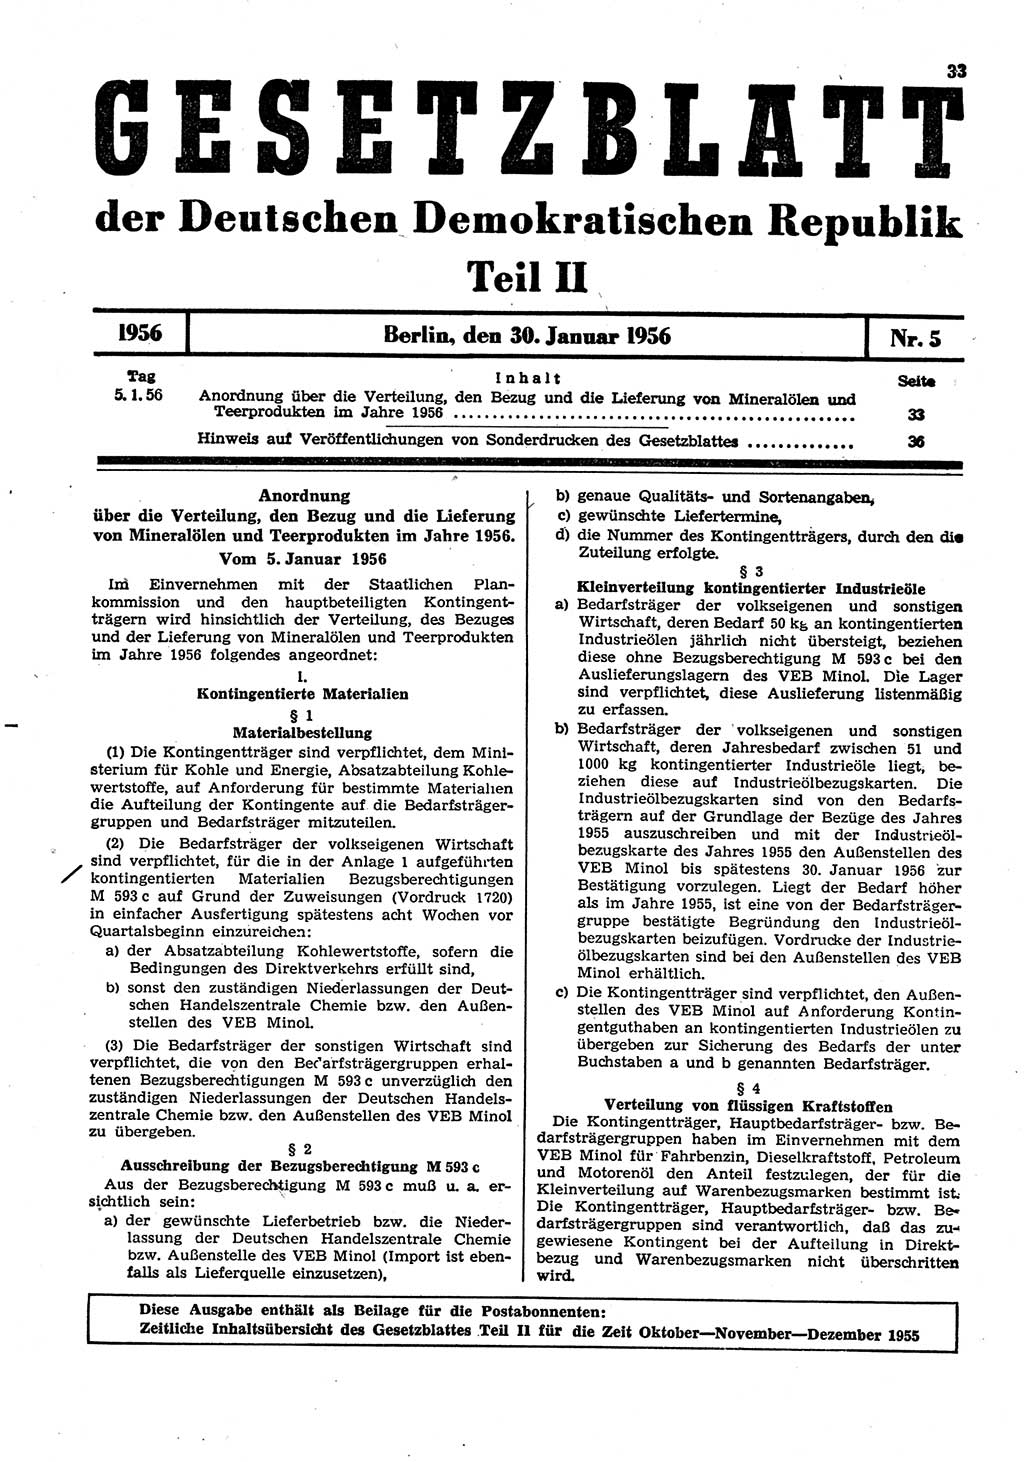 Gesetzblatt (GBl.) der Deutschen Demokratischen Republik (DDR) Teil ⅠⅠ 1956, Seite 33 (GBl. DDR ⅠⅠ 1956, S. 33)